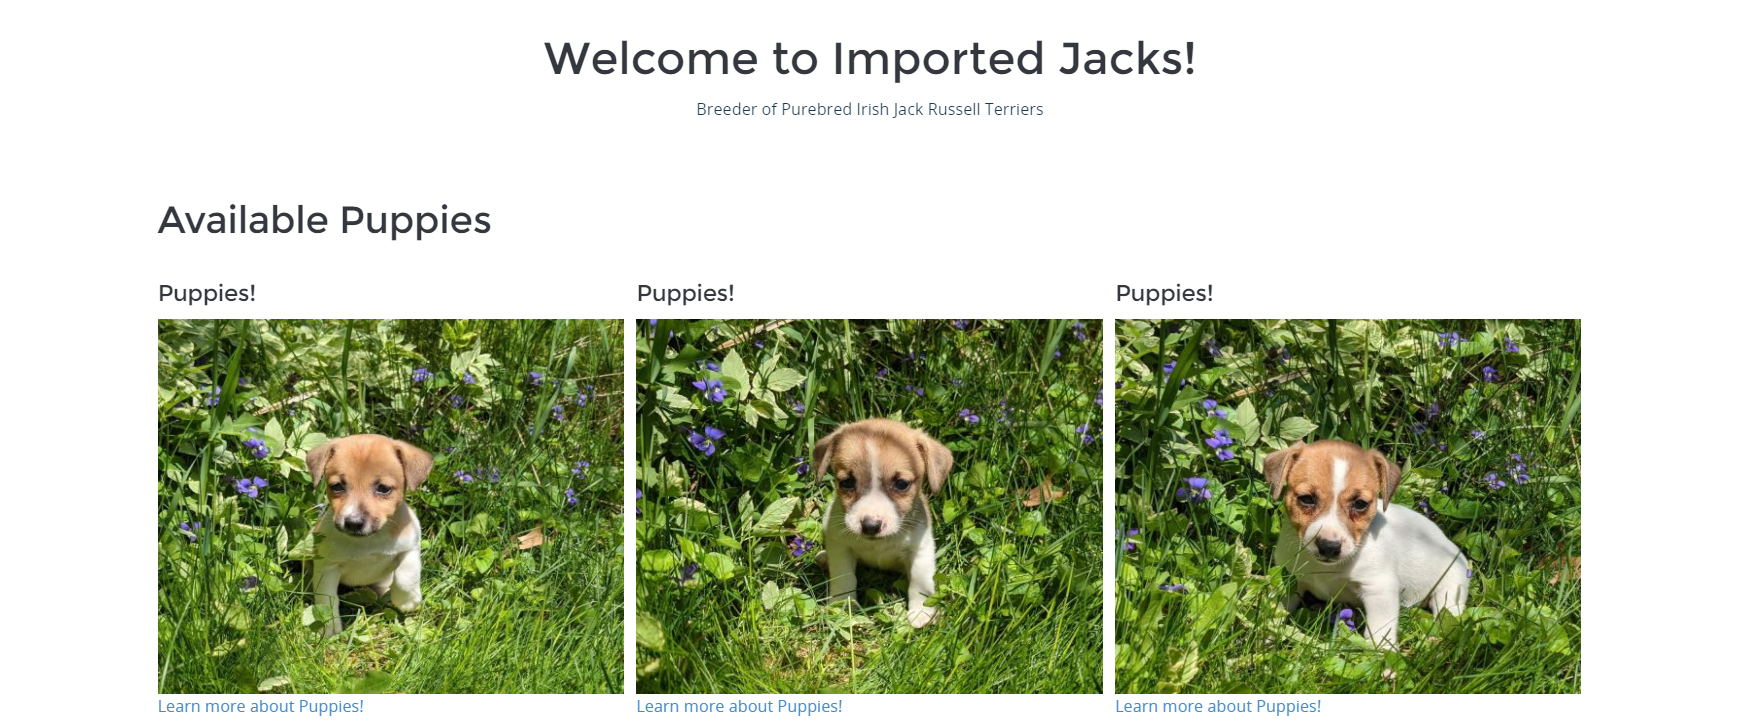 Imported jacks - Image 1